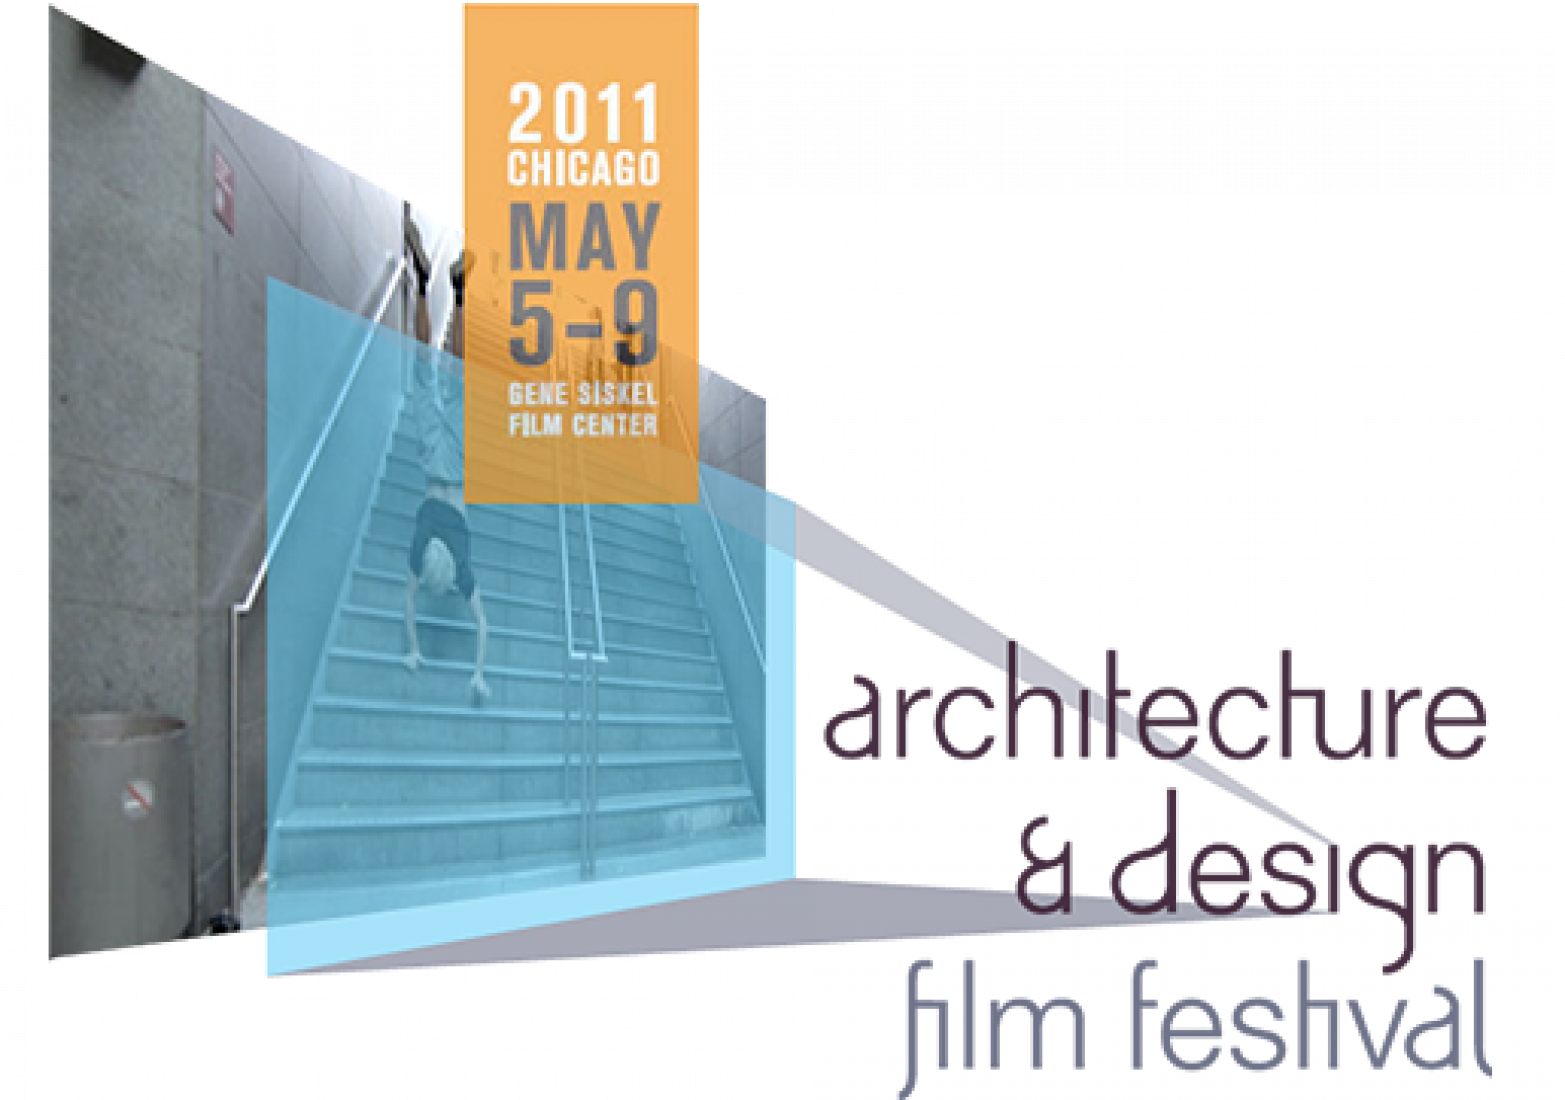 Architecture & Design Film Festival 2011 in Chicago